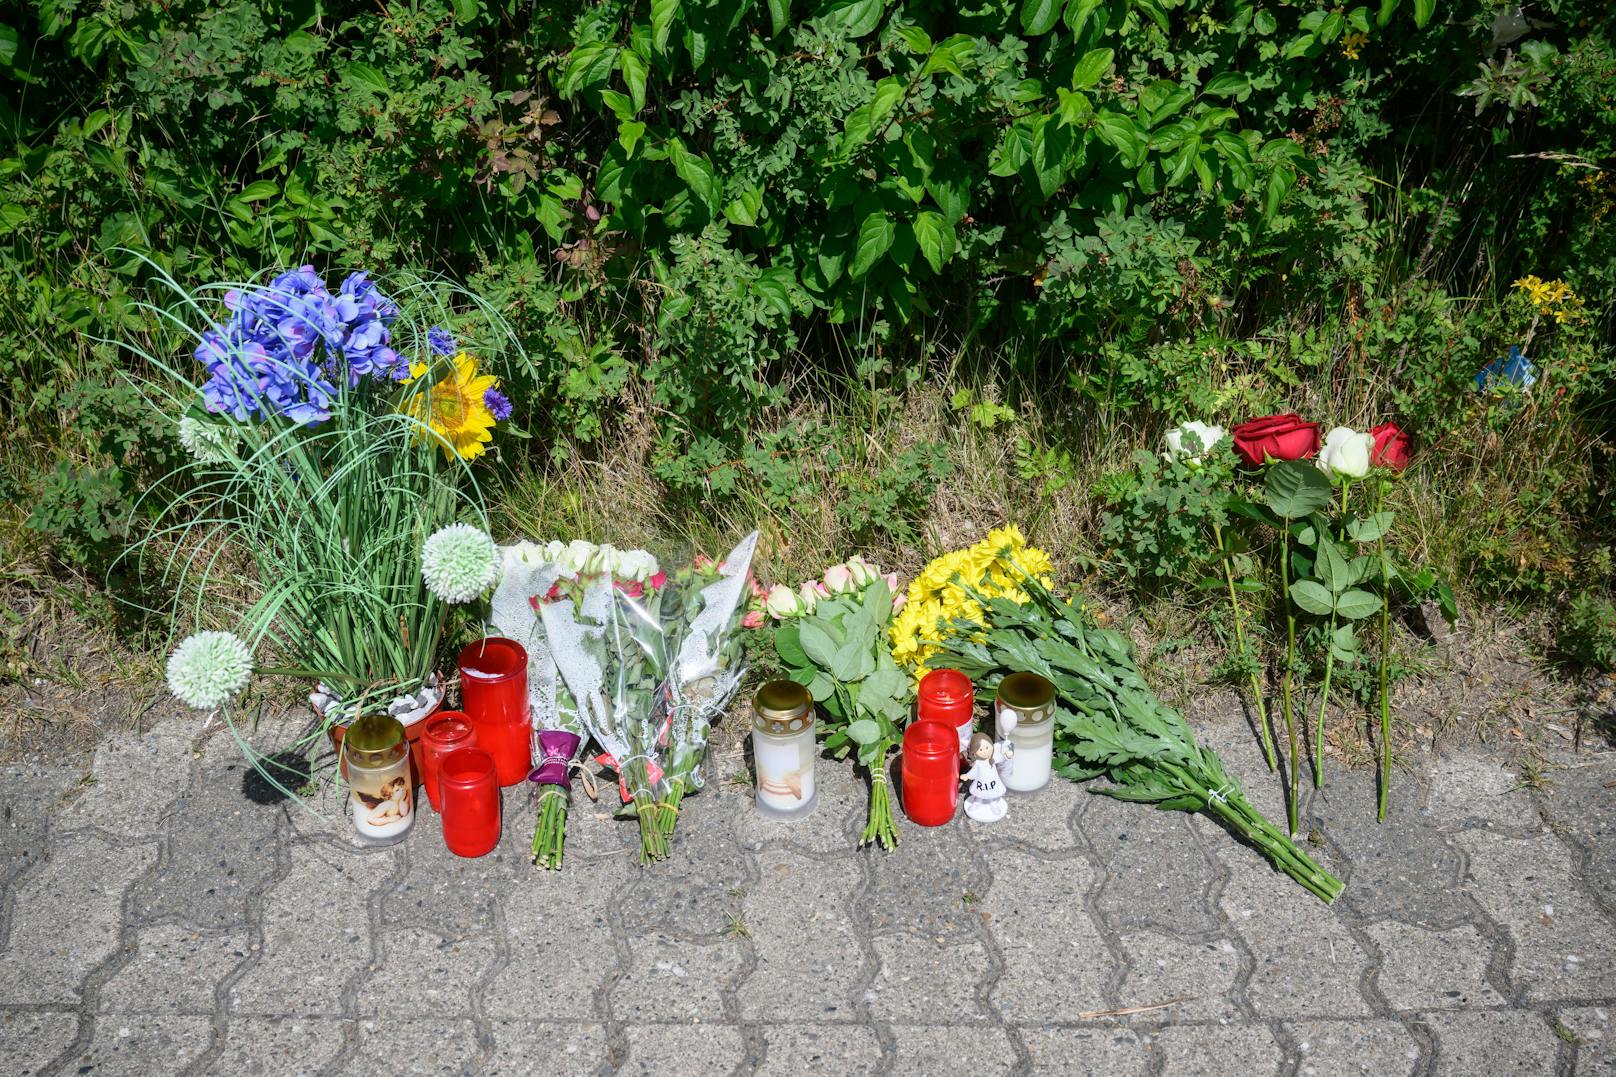 Kerzen, Blumen und Figuren zum Gedenken am Hans-Böckler-Ring. Nach der Entdeckung eines toten 15-jährigen Mädchens in Salzgitter gelten zwei Jugendliche als dringende Verdächtige. Es handelt sich um einen 13-Jährigern und einen 14-Jährigen.